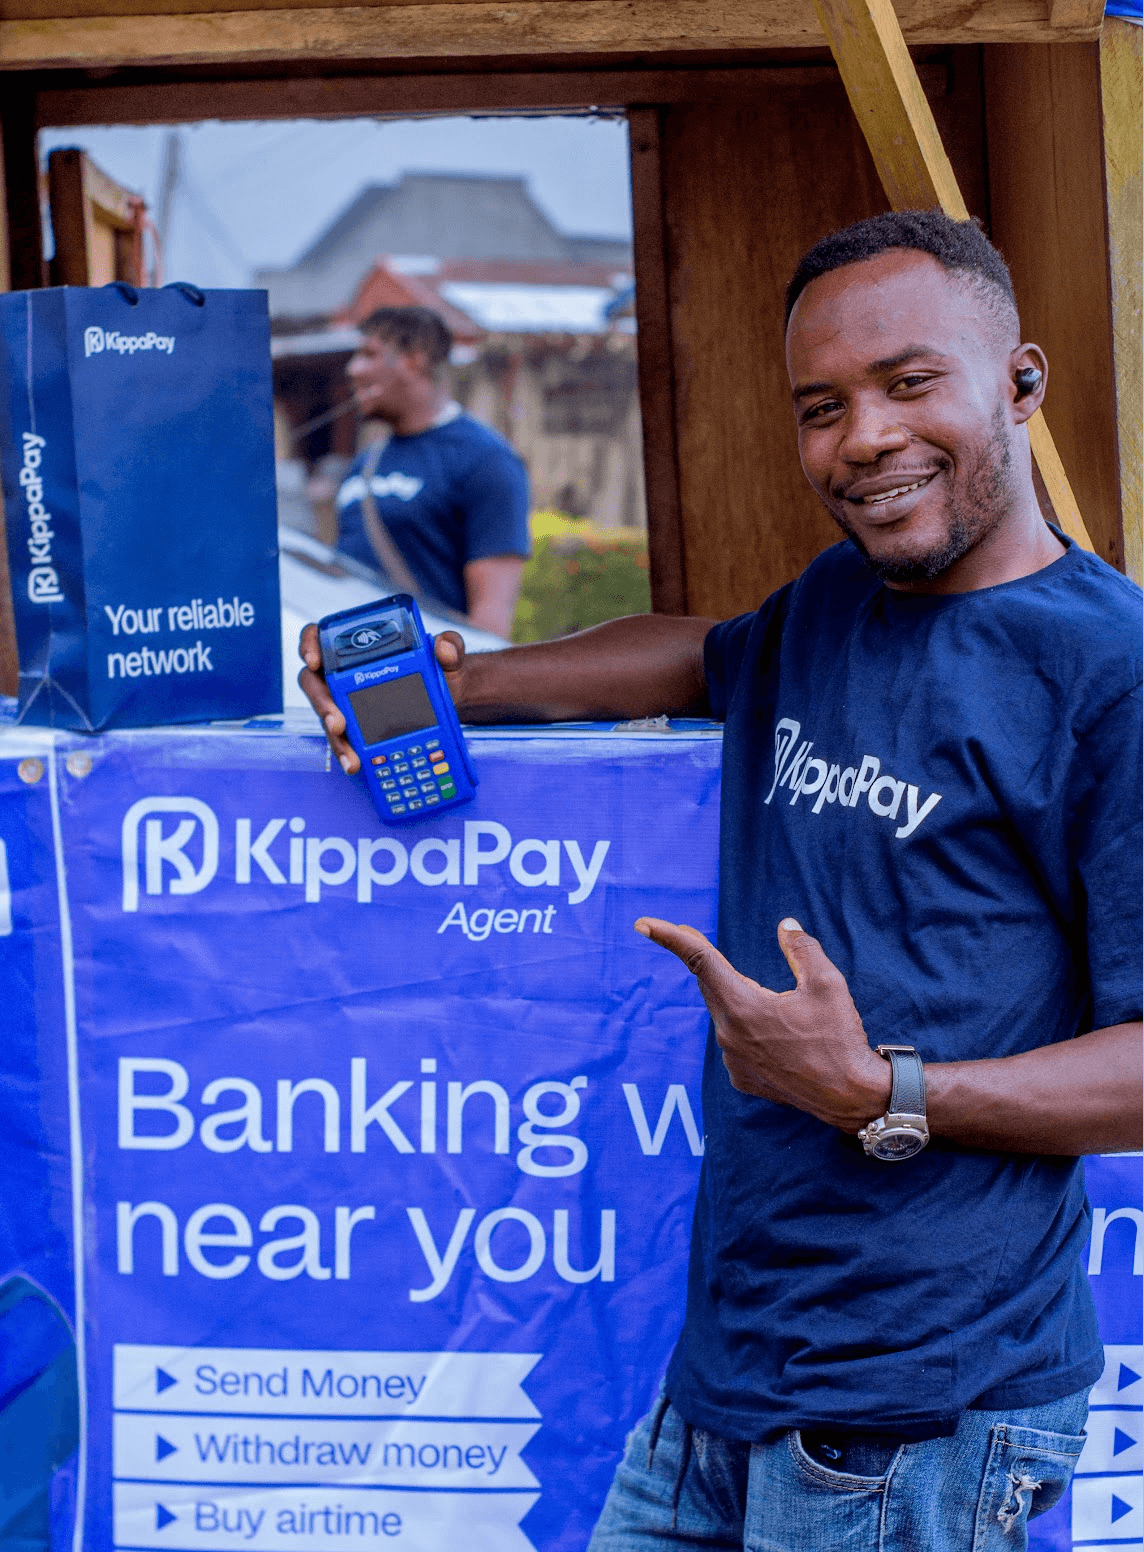 KippaPay – Agency Banking & POS